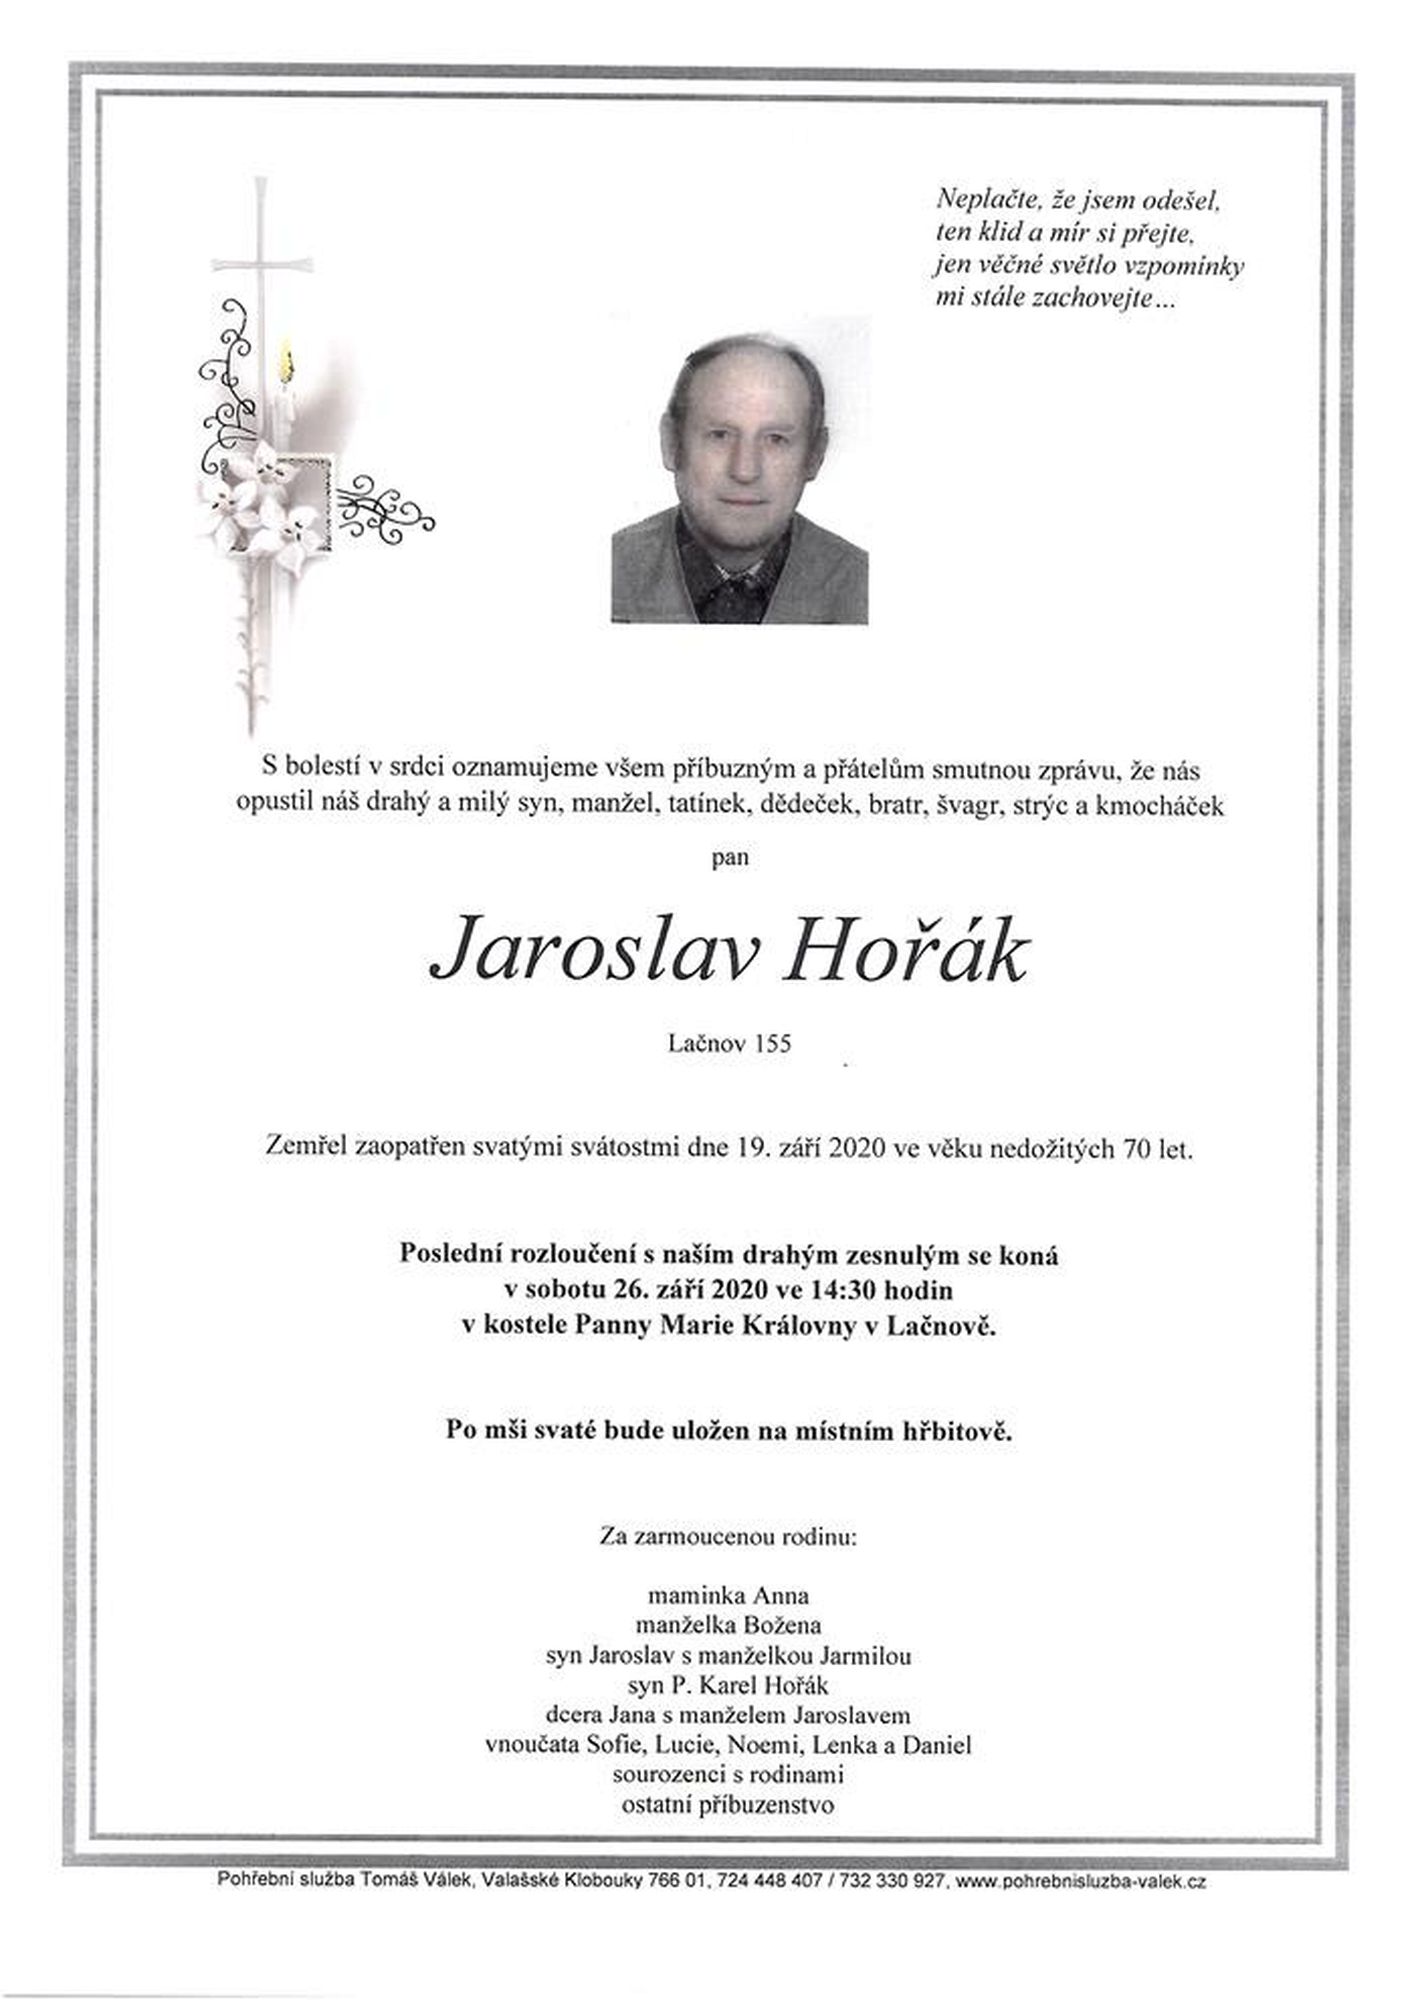 Jaroslav Hořák